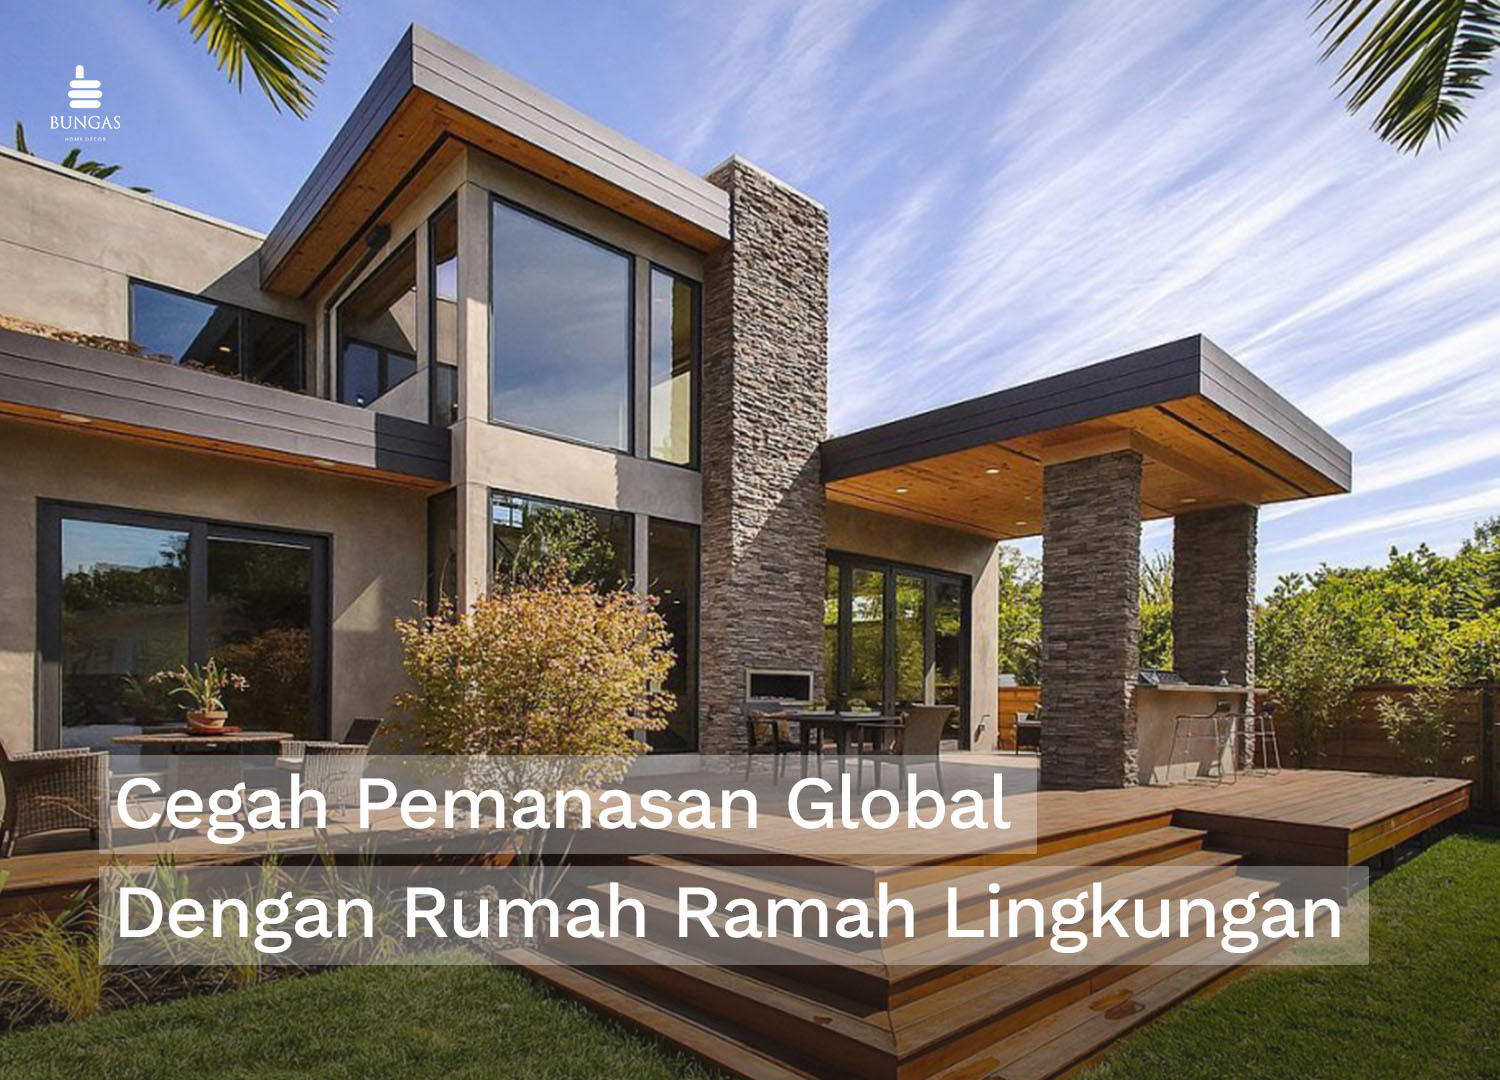 You are currently viewing Rumah Ramah Lingkungan Solusi Cegah Pemanasan Global